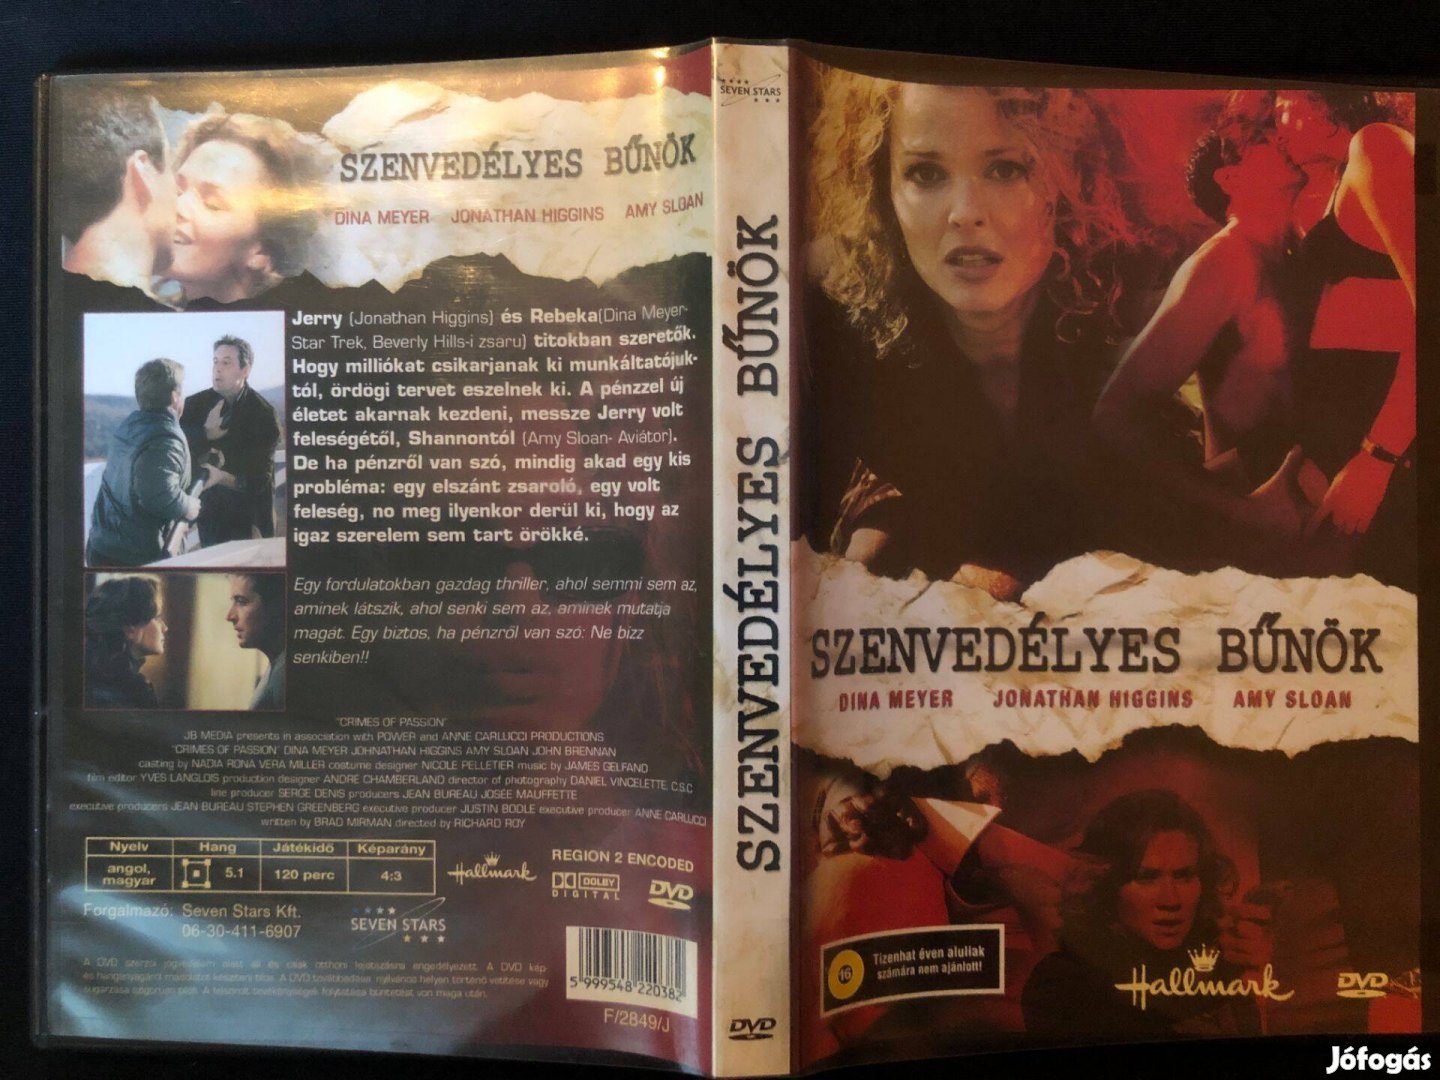 Szenvedélyes bűnök DVD (Dina Meyer, Jonathan Higgins)